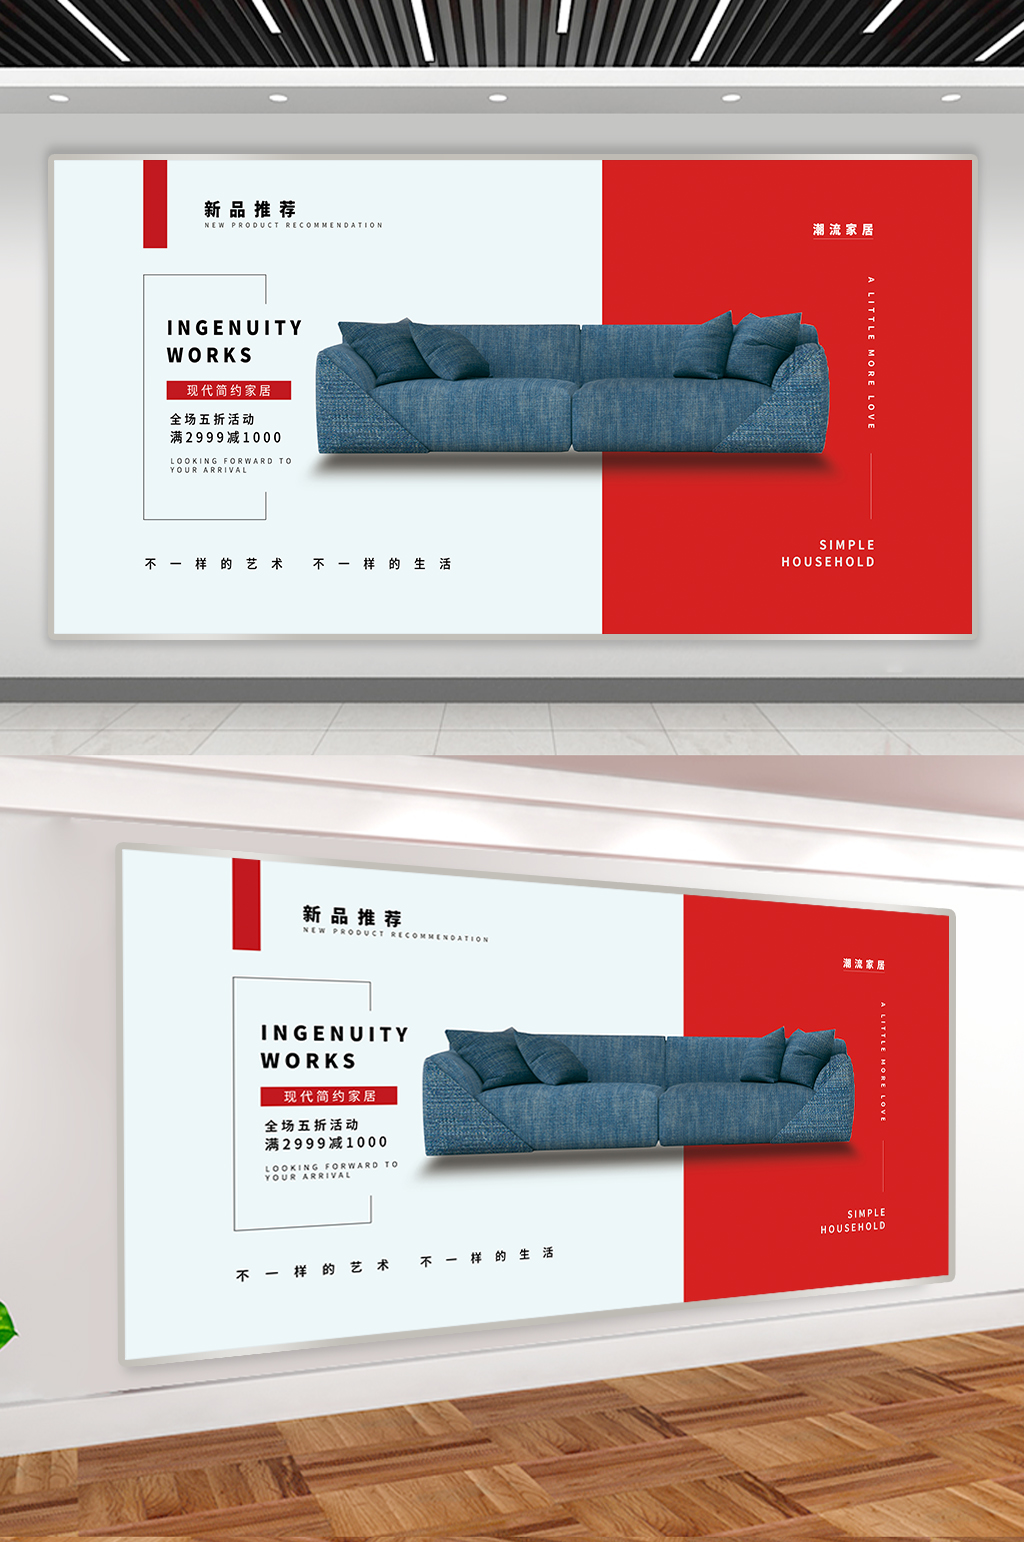 沙发广告文案图片